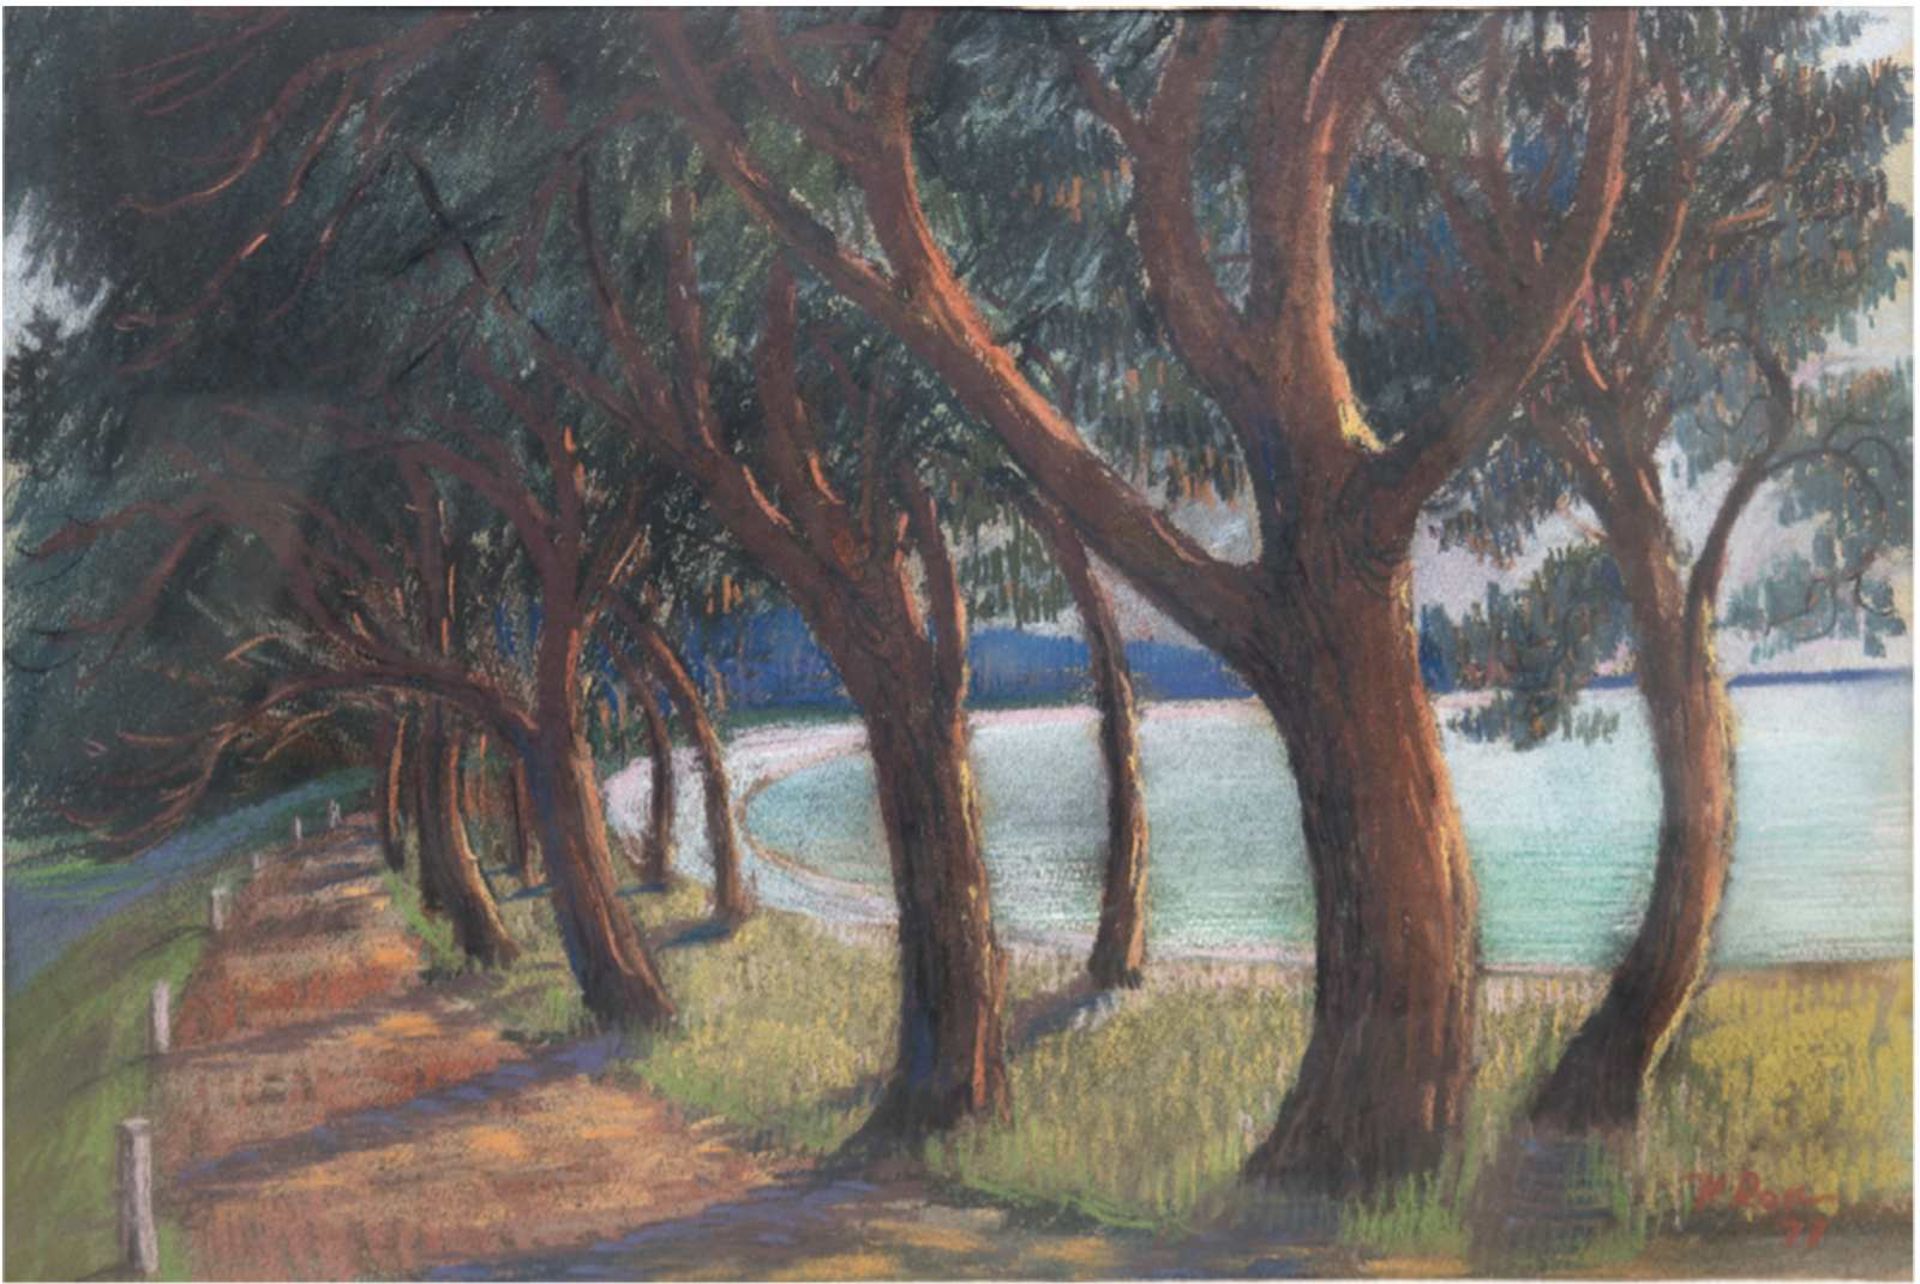 Rost, K. "Bäume am Ufer", Pastell/Papier, sign. u.r. und dat. '77, 46x63 cm, imPassepartout